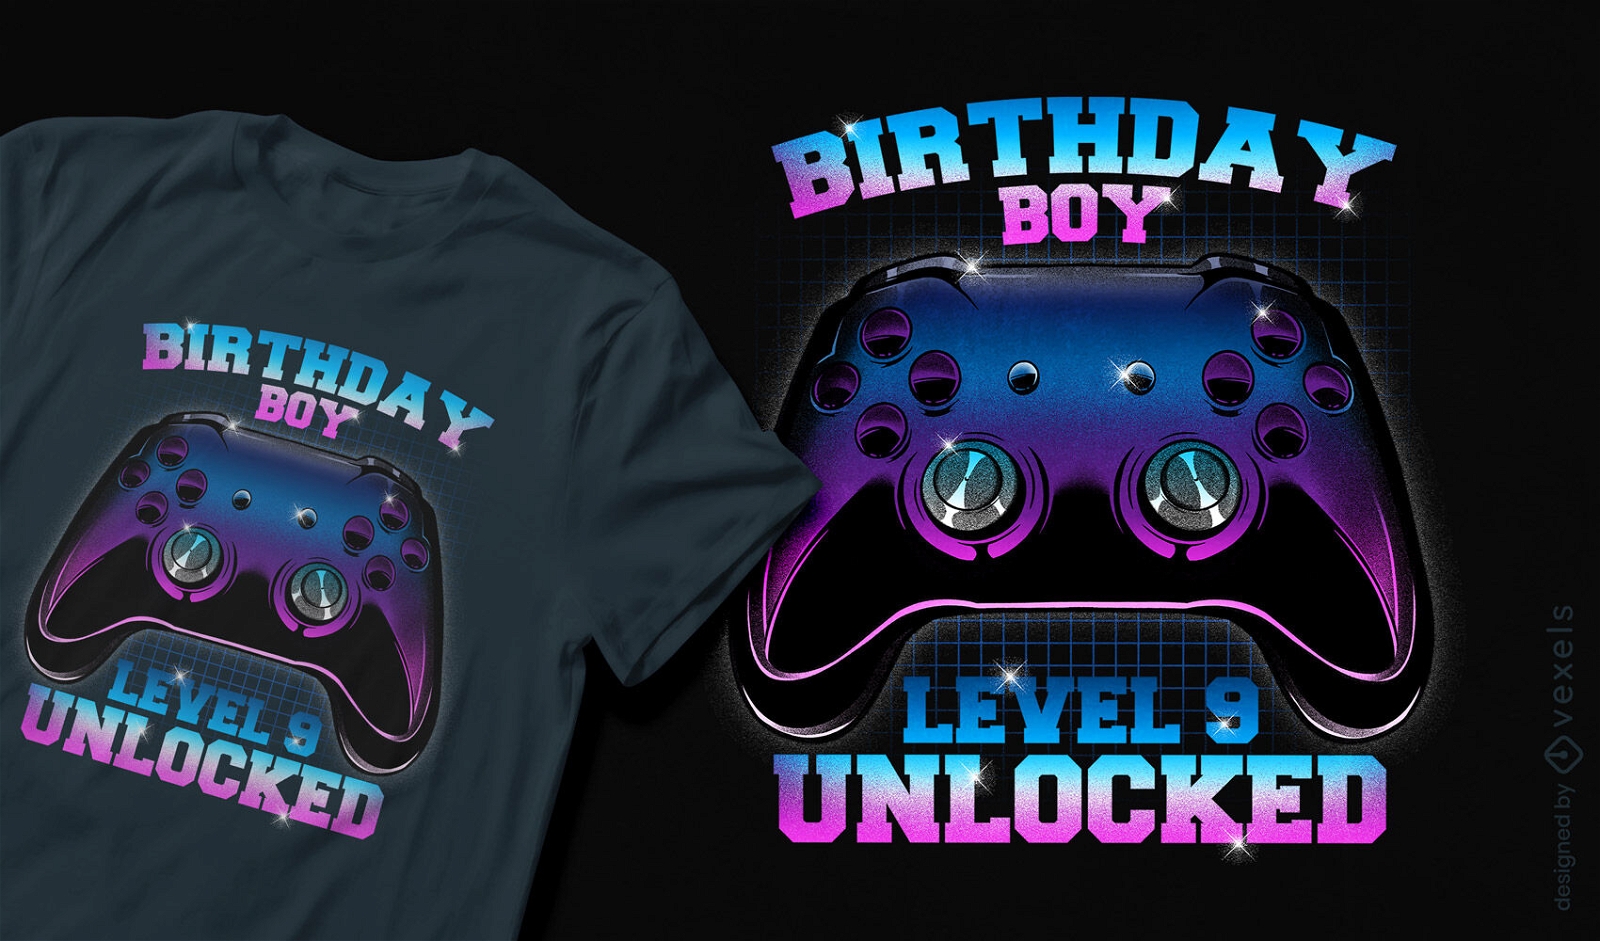 Birthday boy gaming t-shirt design